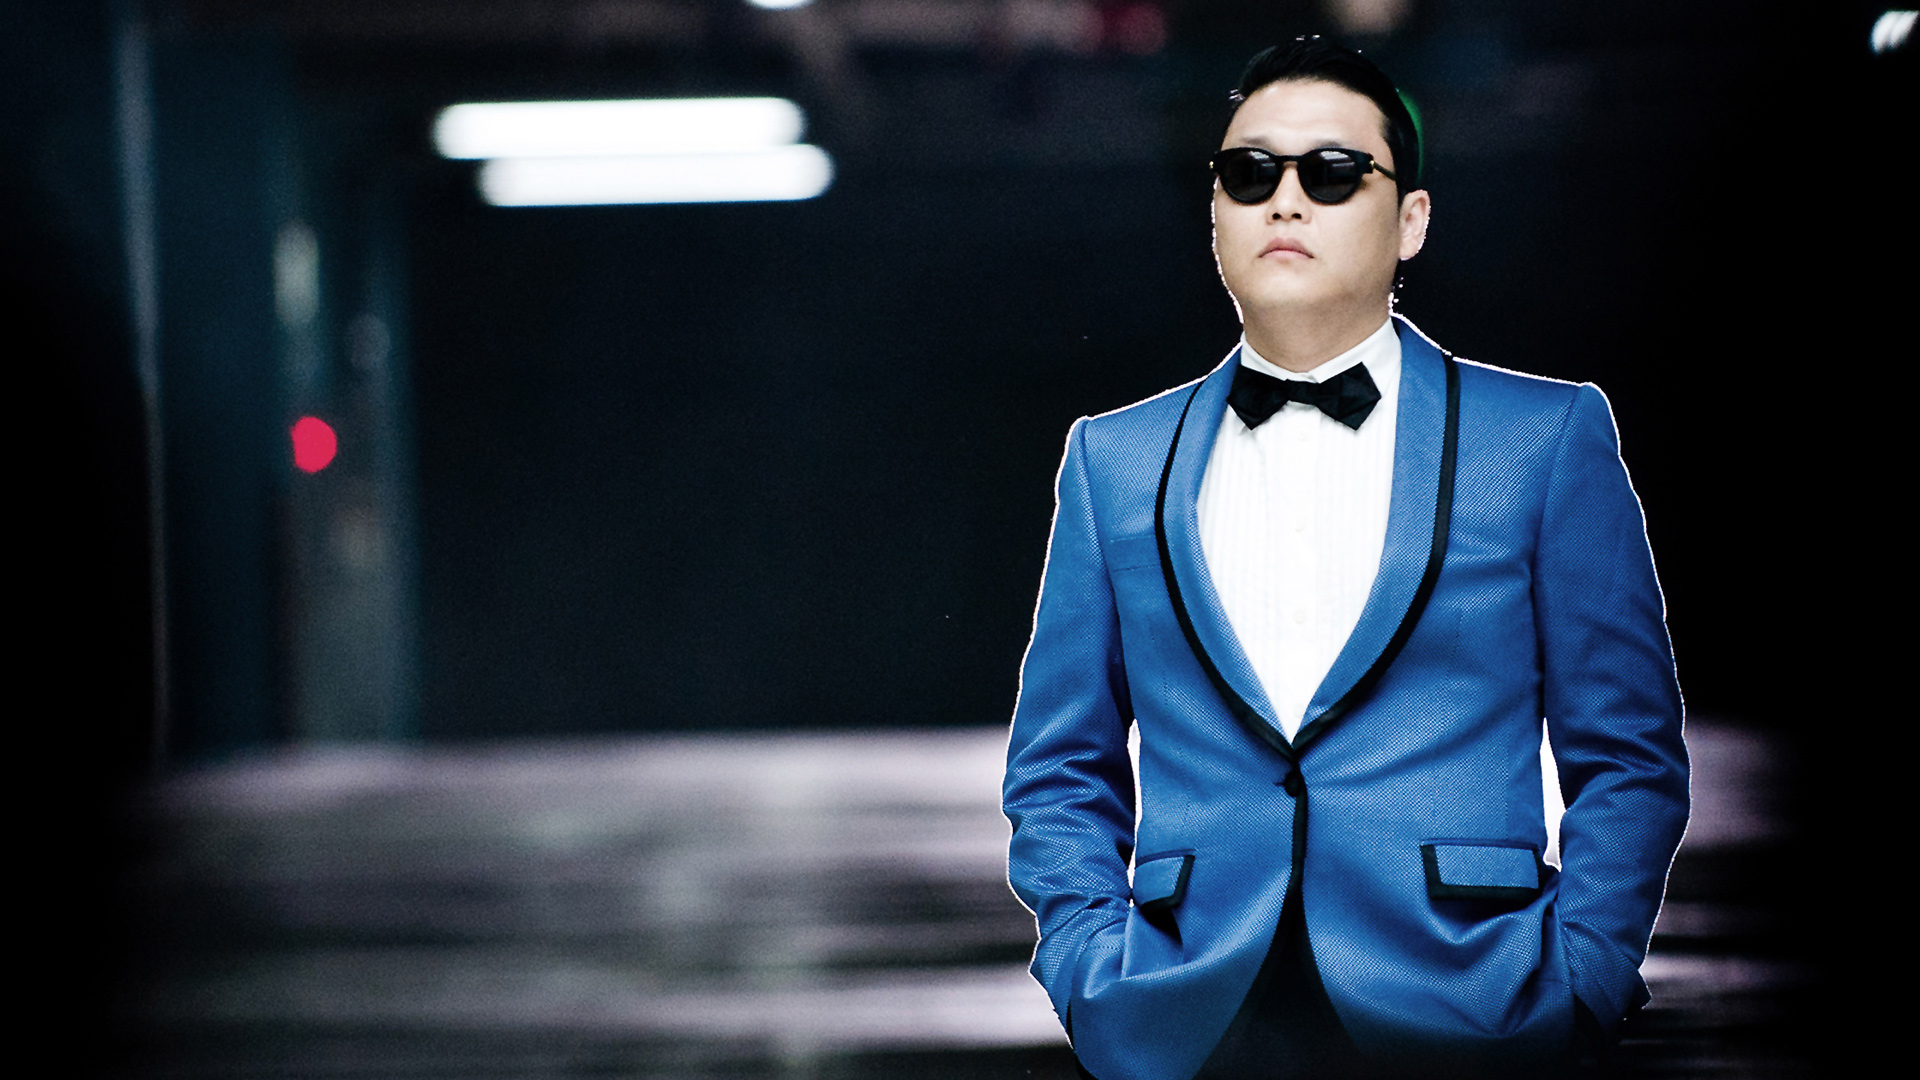 Diez años después del «Gangnam Style», el rapero Psy es más feliz que nunca  - Diario El Salvador